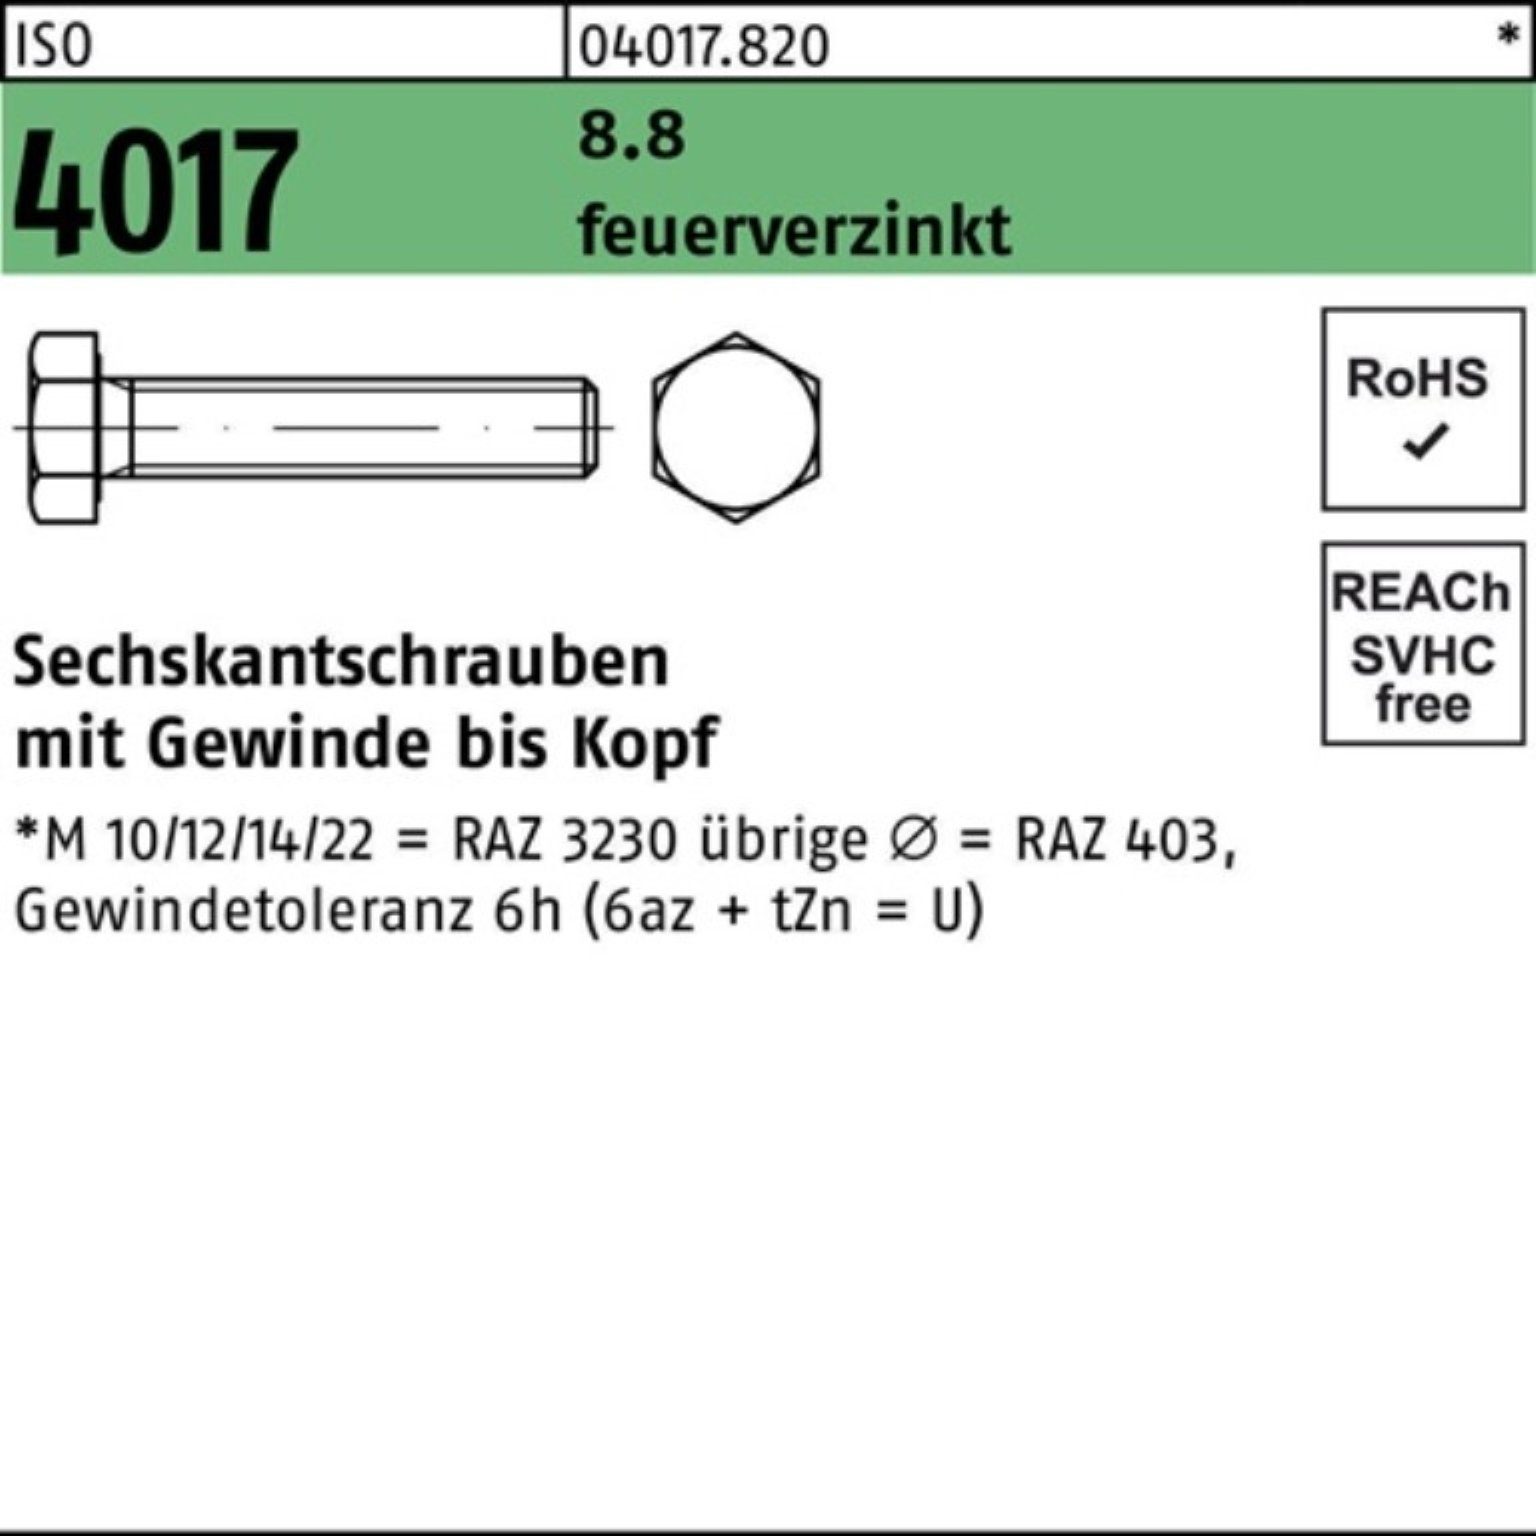 8.8 Bufab Sechskantschraube 200 4017 Pack 70 200er Sechskantschraube VG St M8x ISO feuerverz.